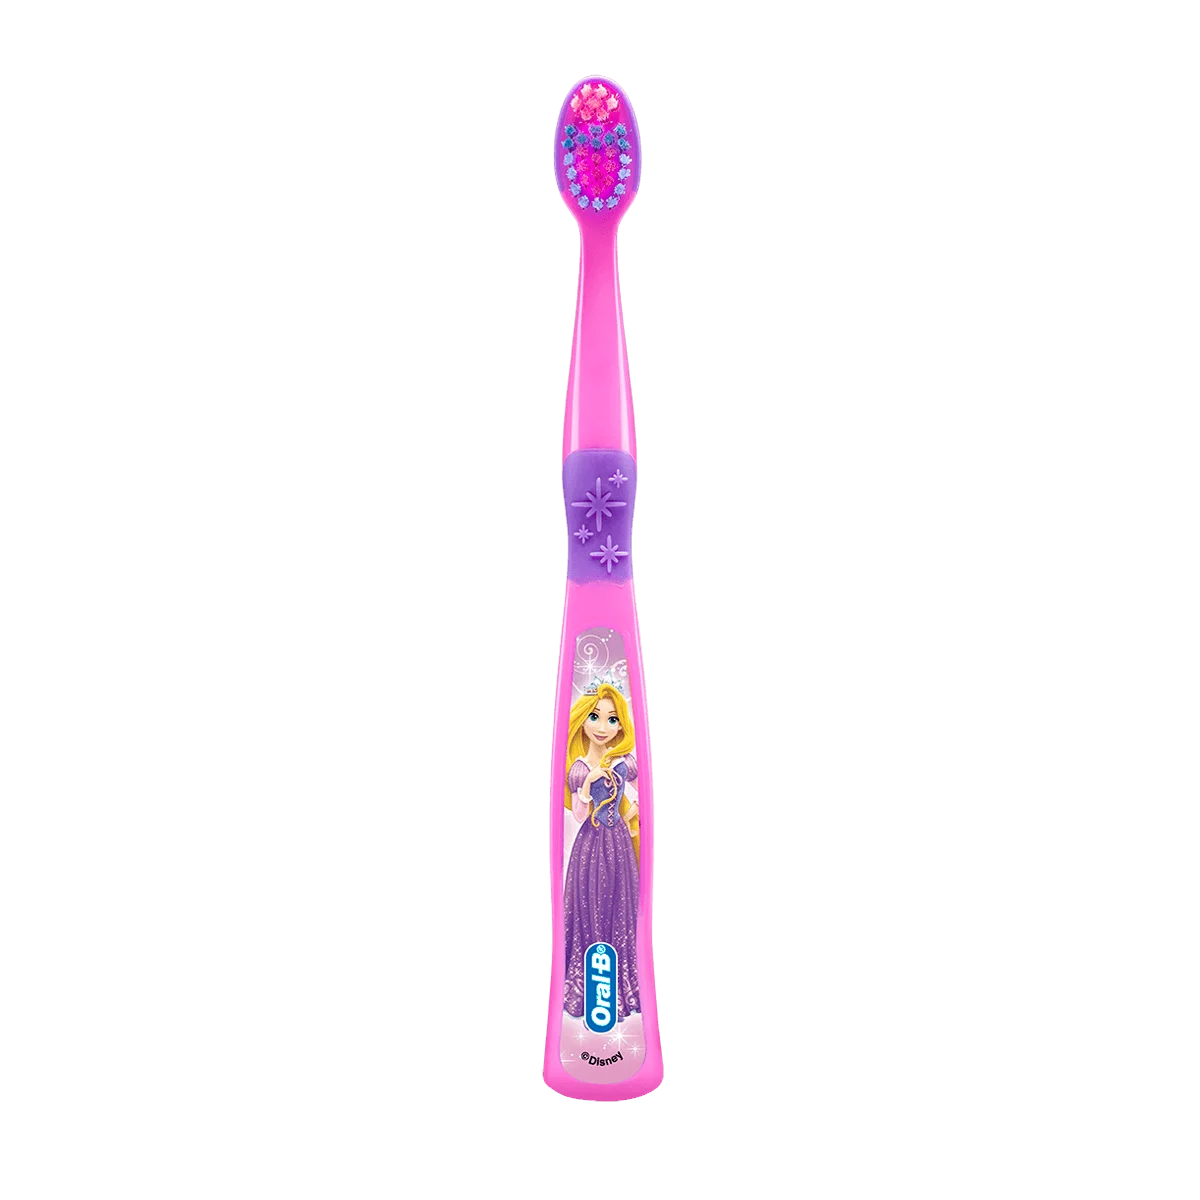 Cepillo de dientes Infantil Stages Princess & Cars